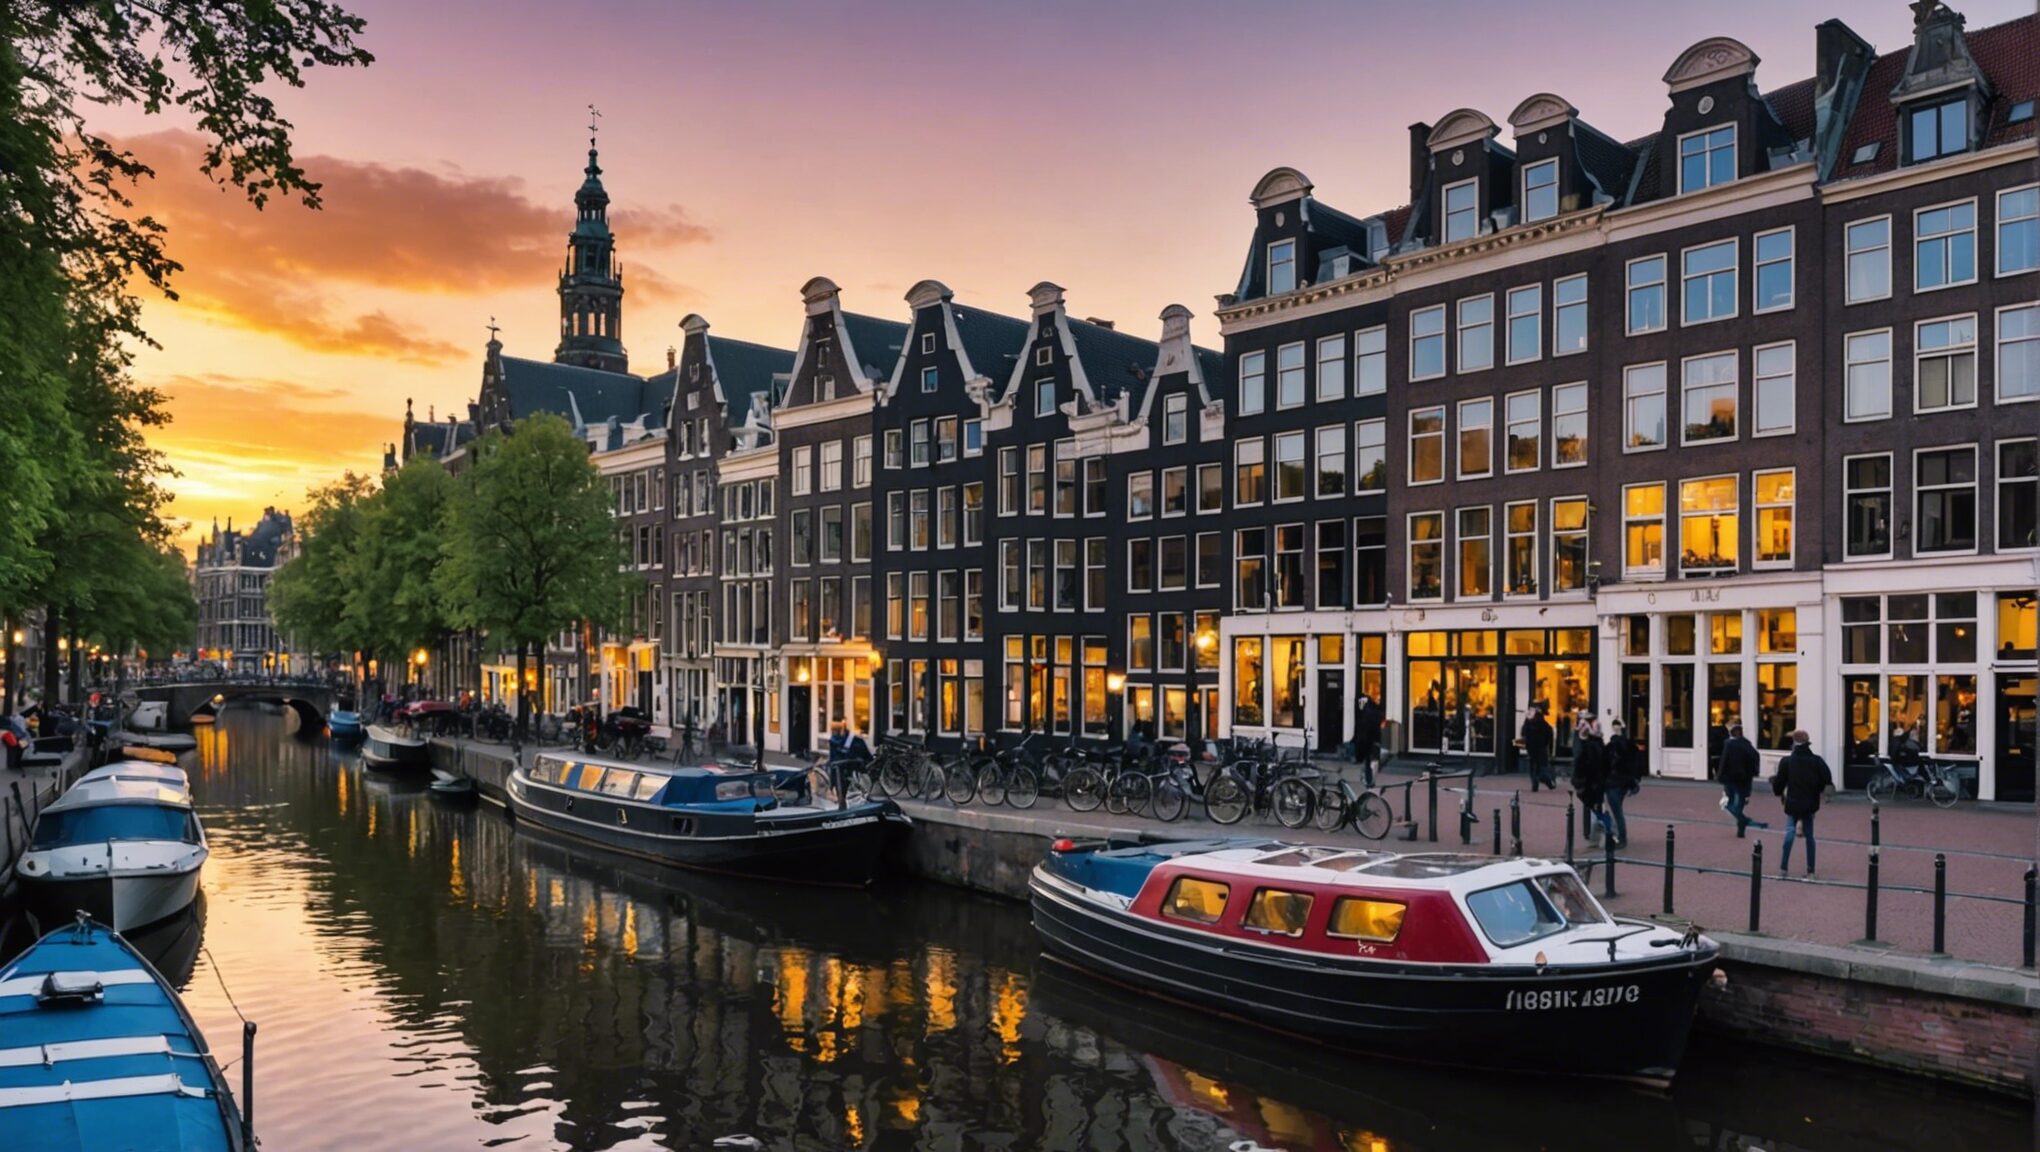 découvrez les activités incroyables à amsterdam pour les aventuriers urbains. ne manquez pas cette expérience unique dans la capitale animée des pays-bas !